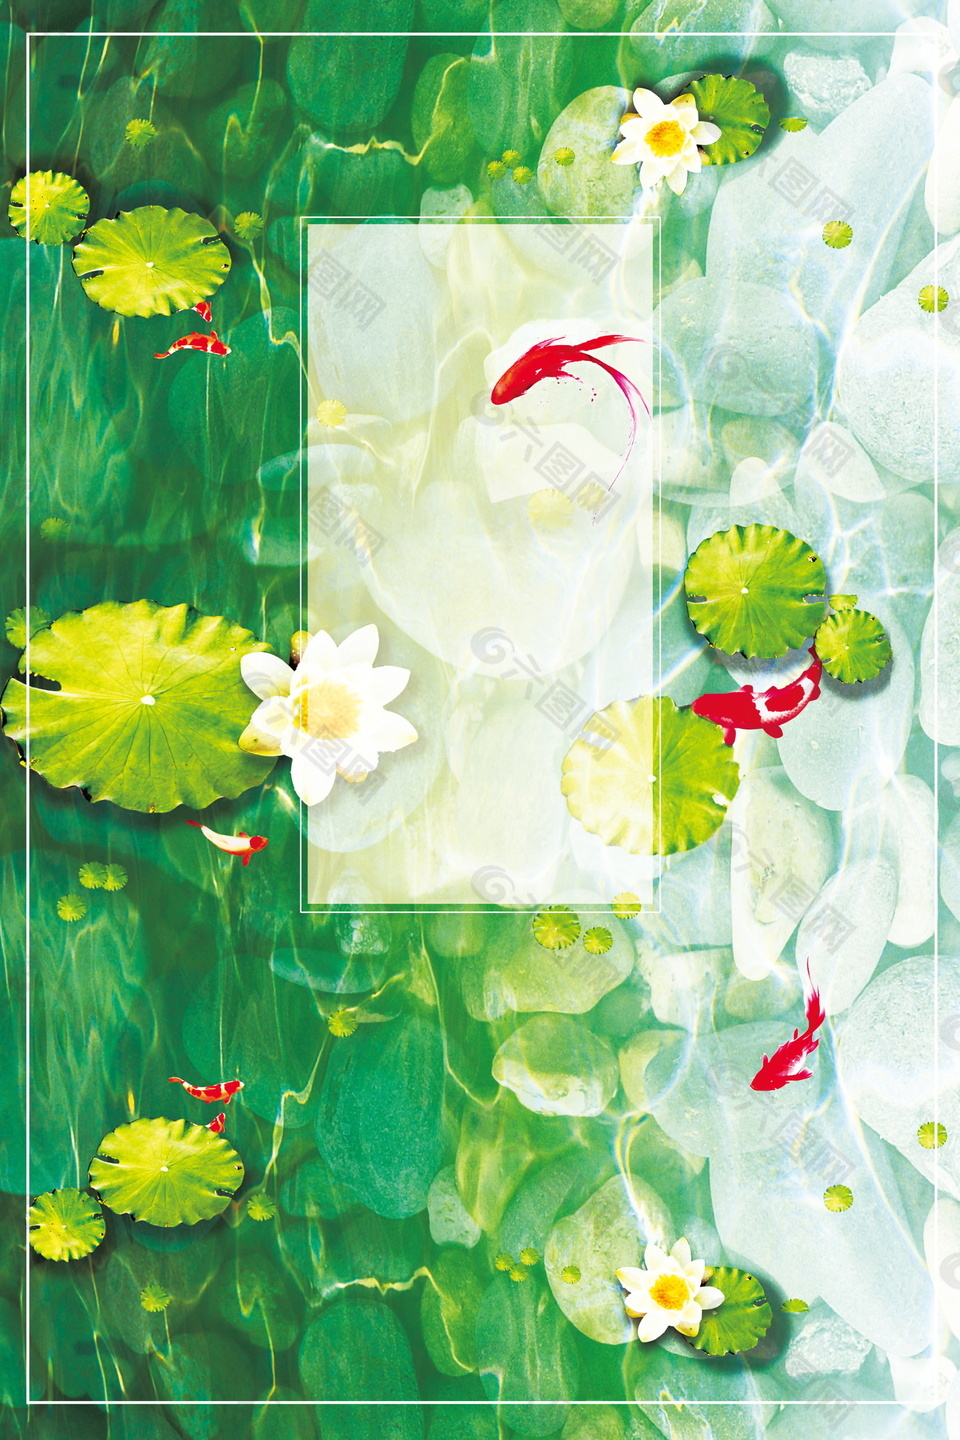 靓丽绿色底纹相框金鱼处暑广告背景素材